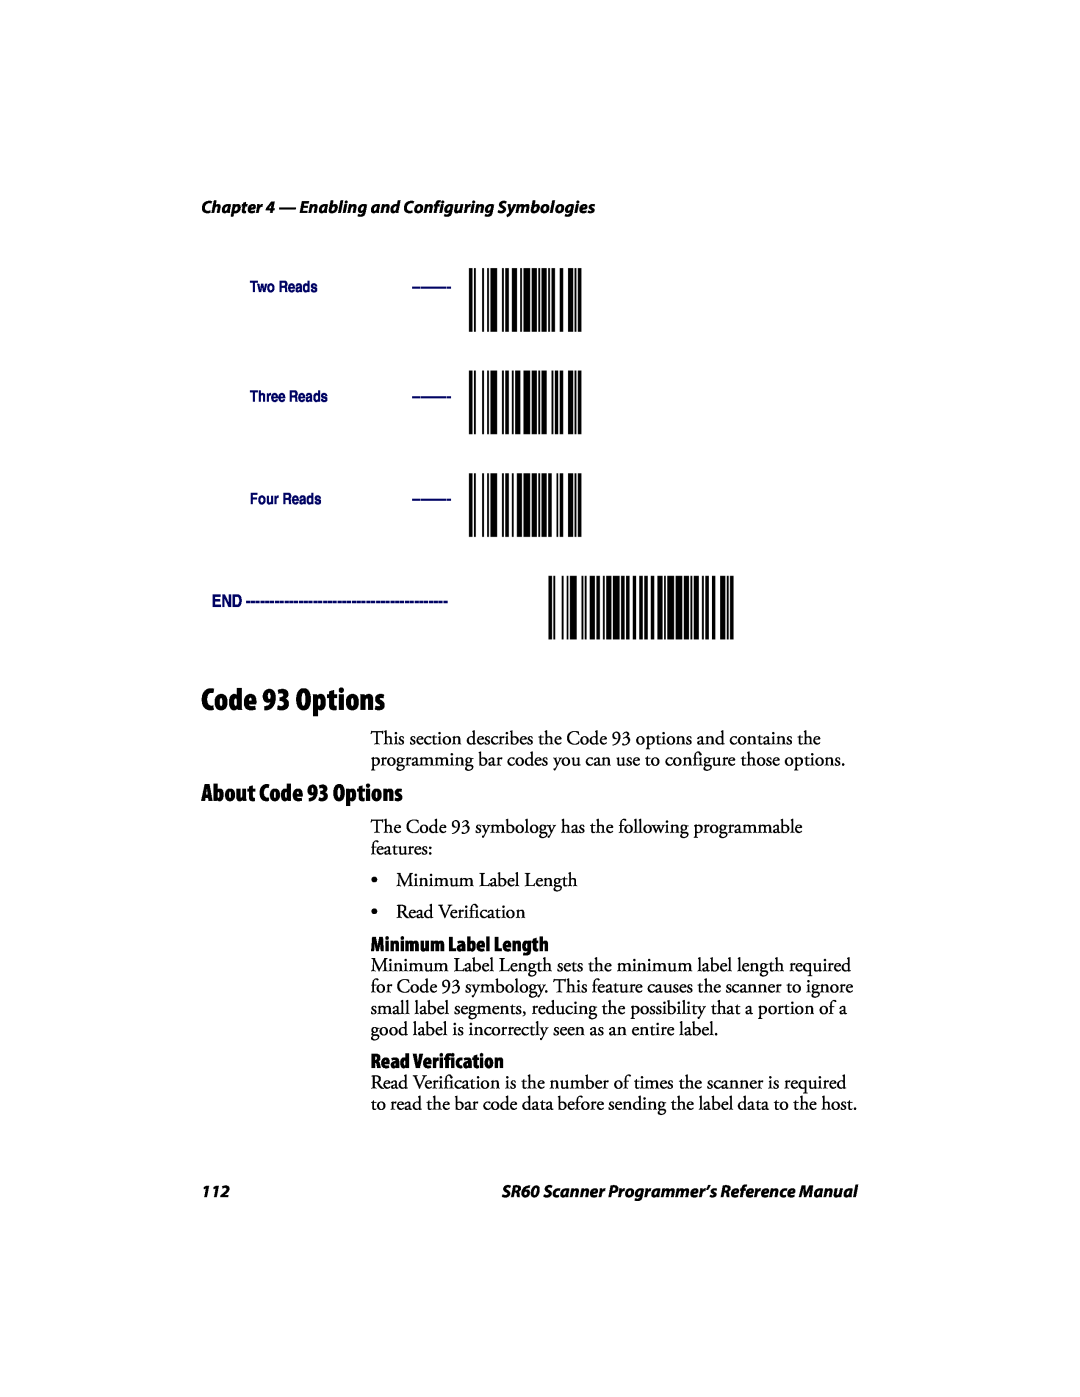 Intermec SR60 manual About Code 93 Options, Minimum Label Length, Read Verification 